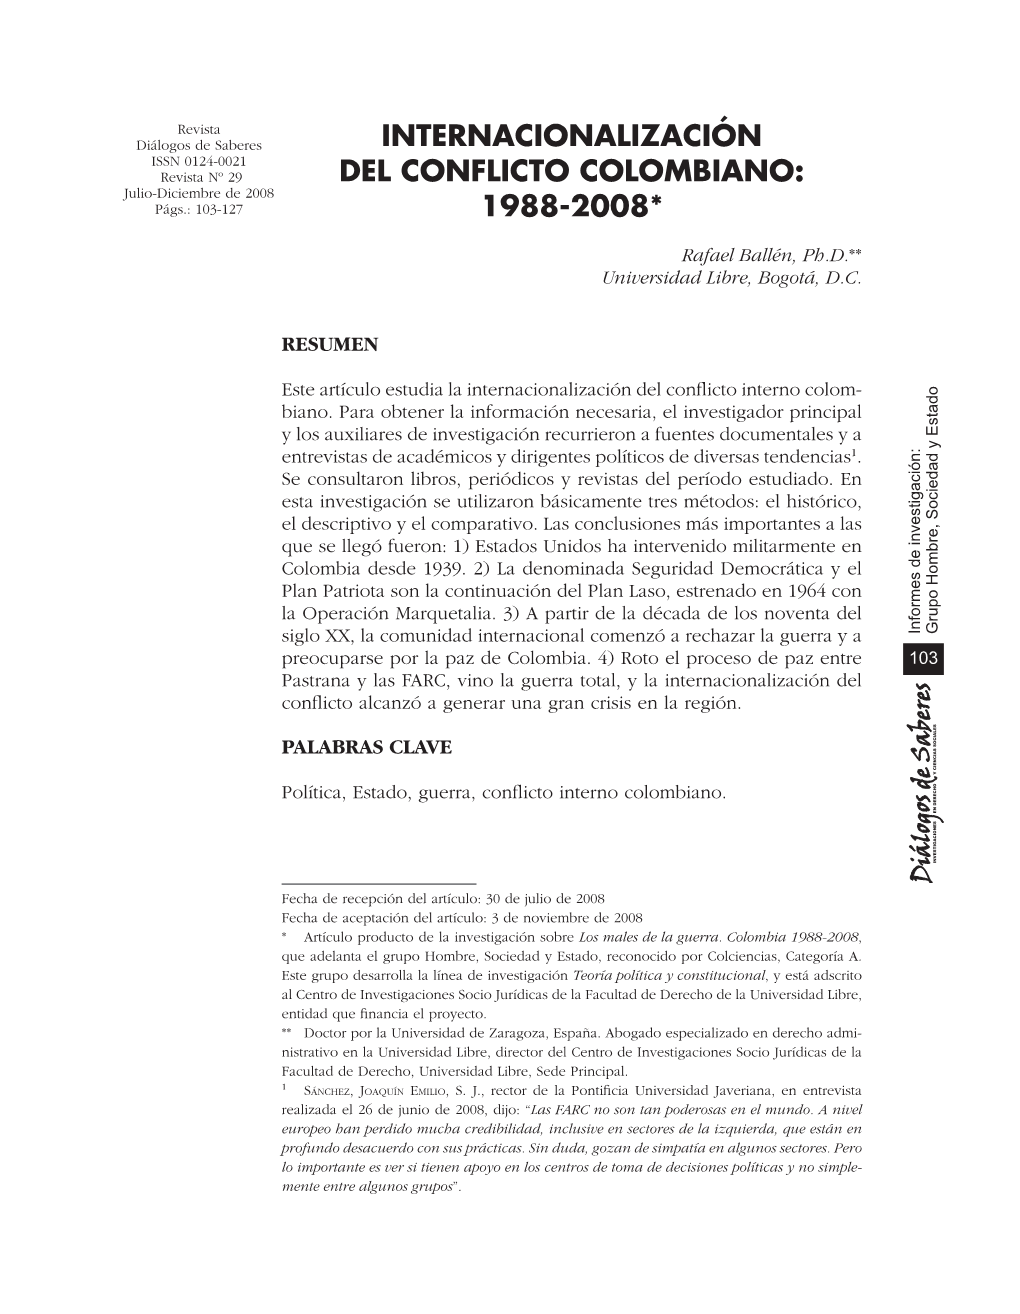 Internacionalización Del Conflicto Colombiano: 1988-2008